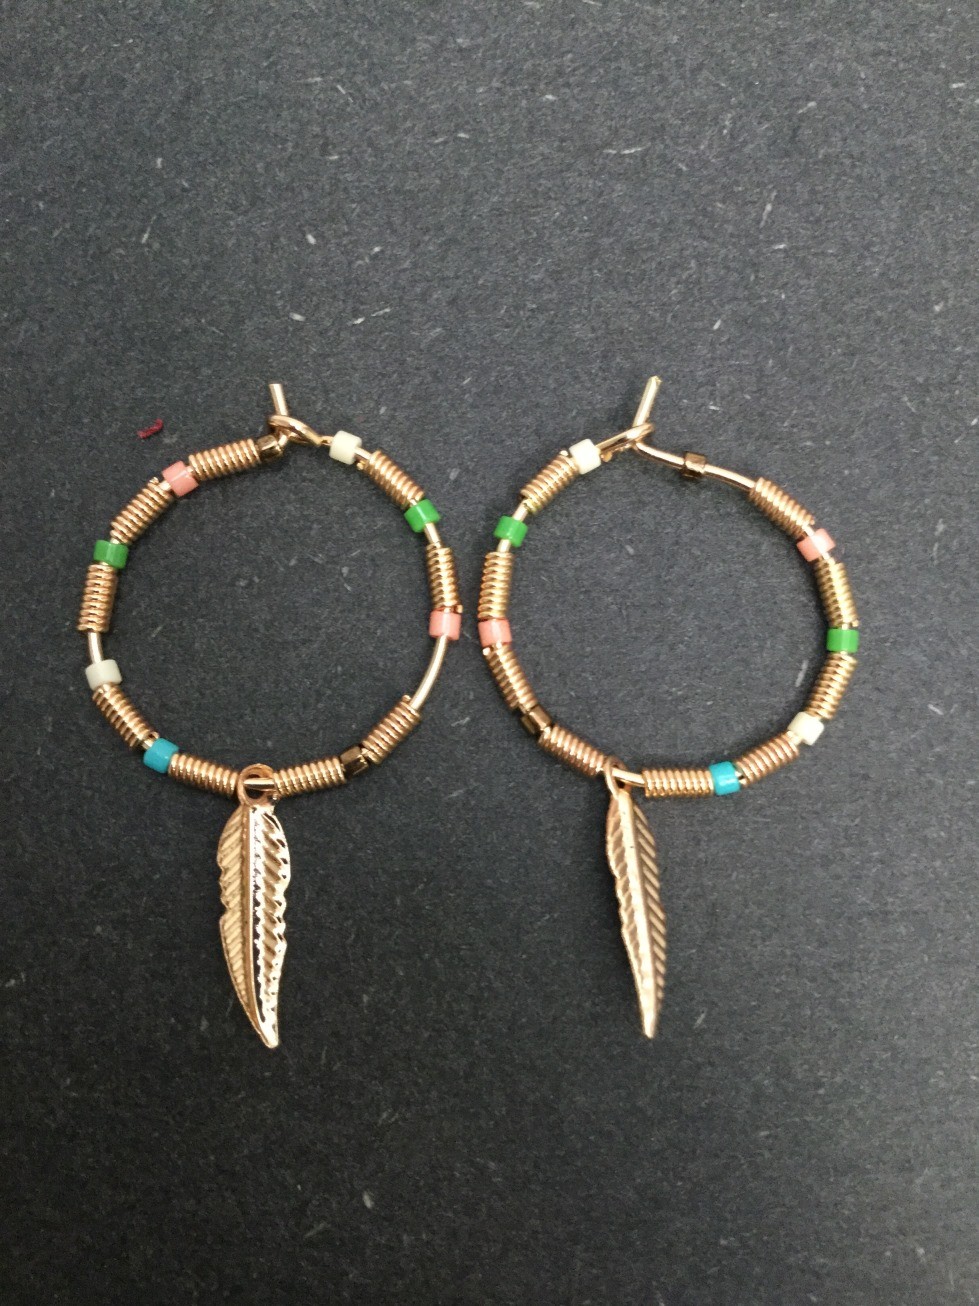 Boucles d'oreilles - Anneau avec perles colorées et plume métallique.